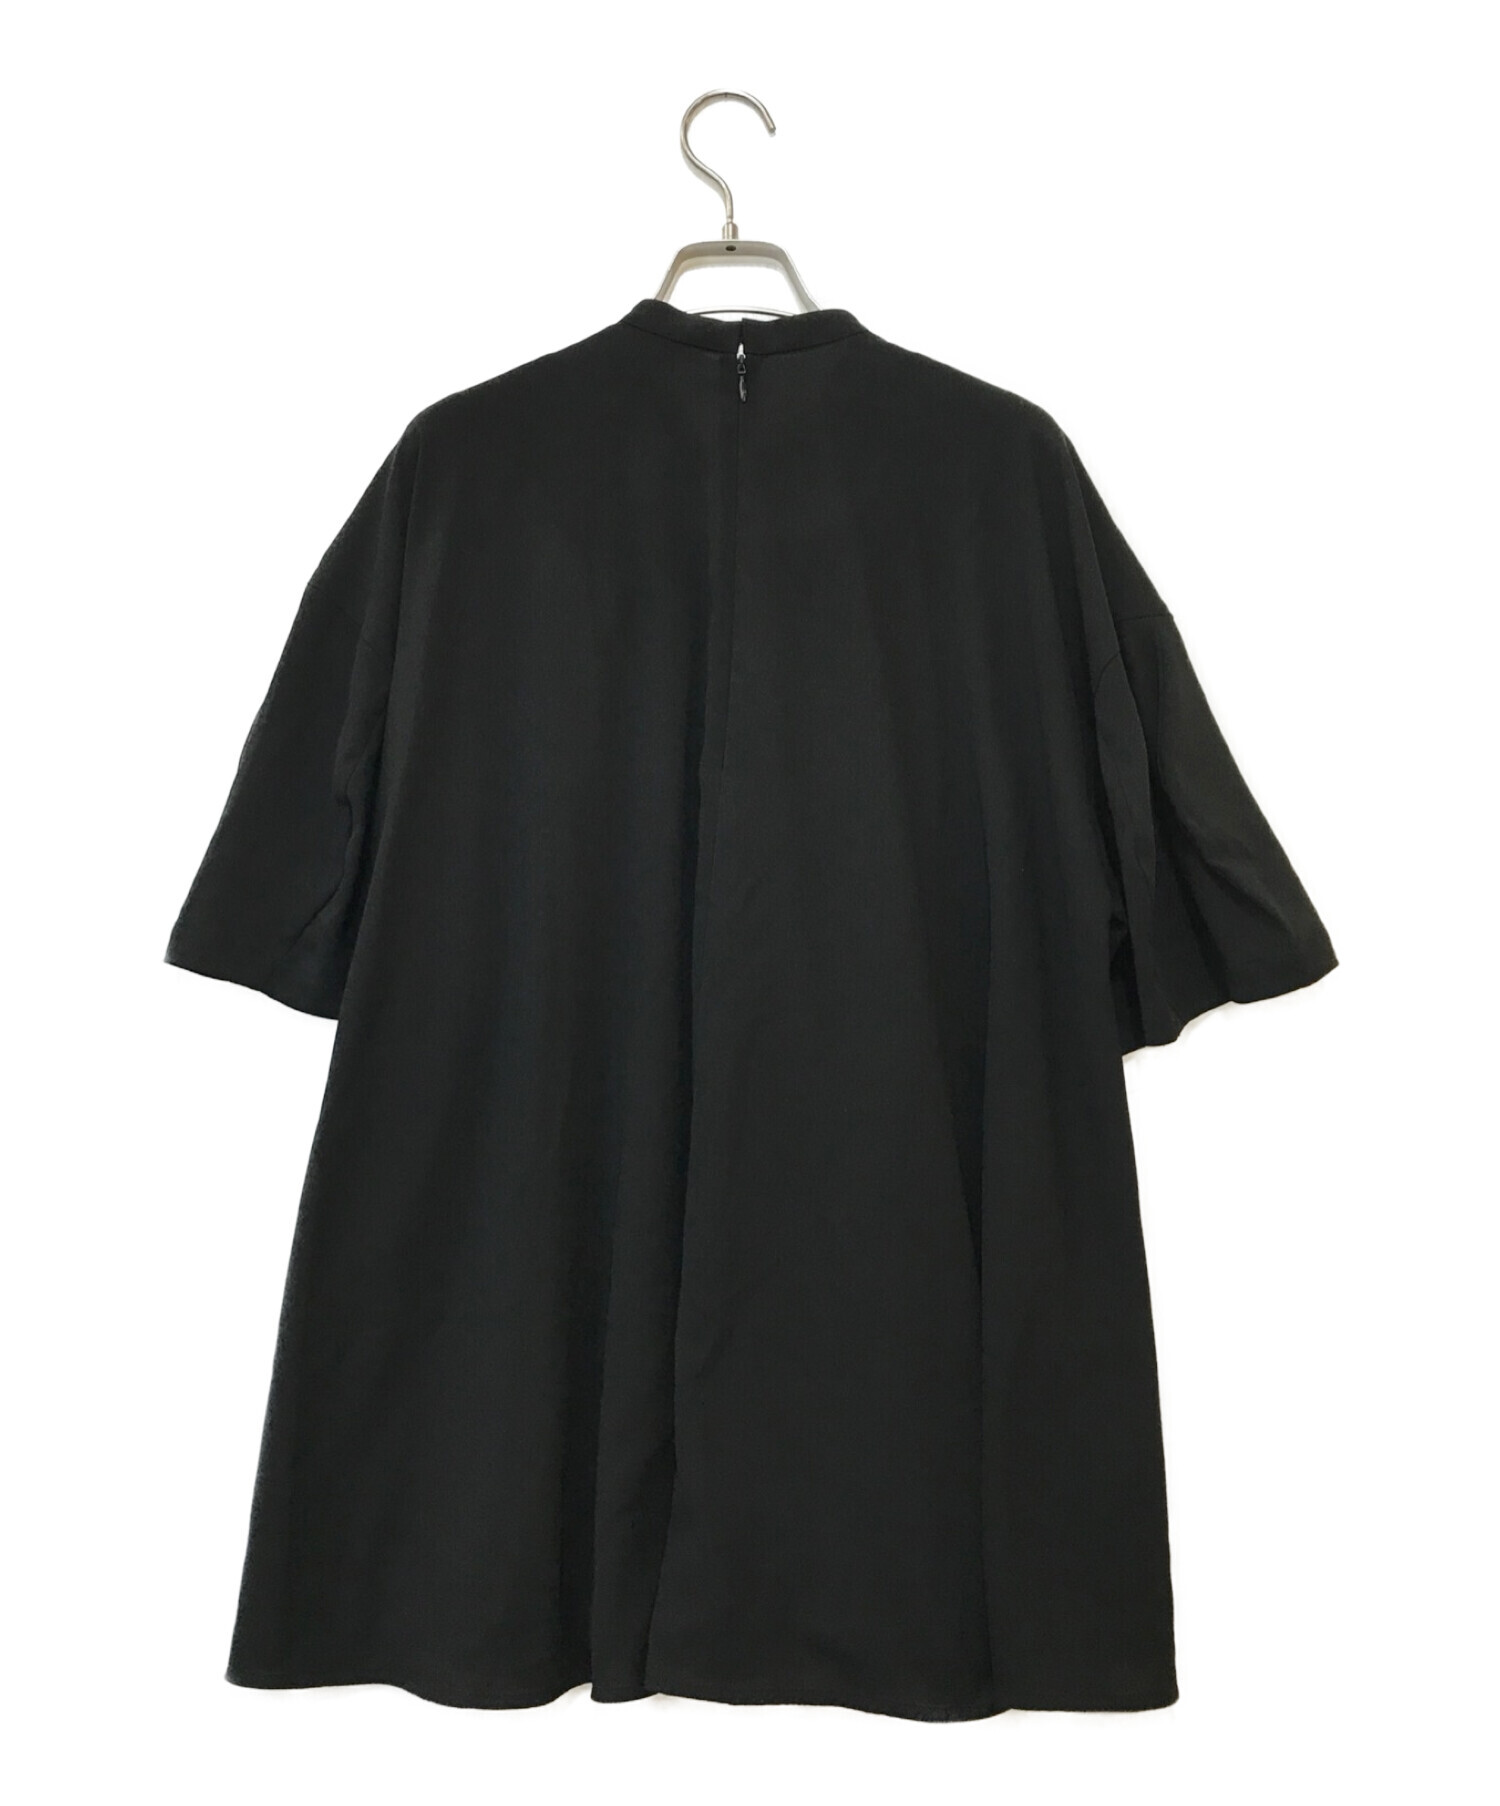 試着のみ】ENFOLD CIRCULAR DRESS ブラック38サイズ-